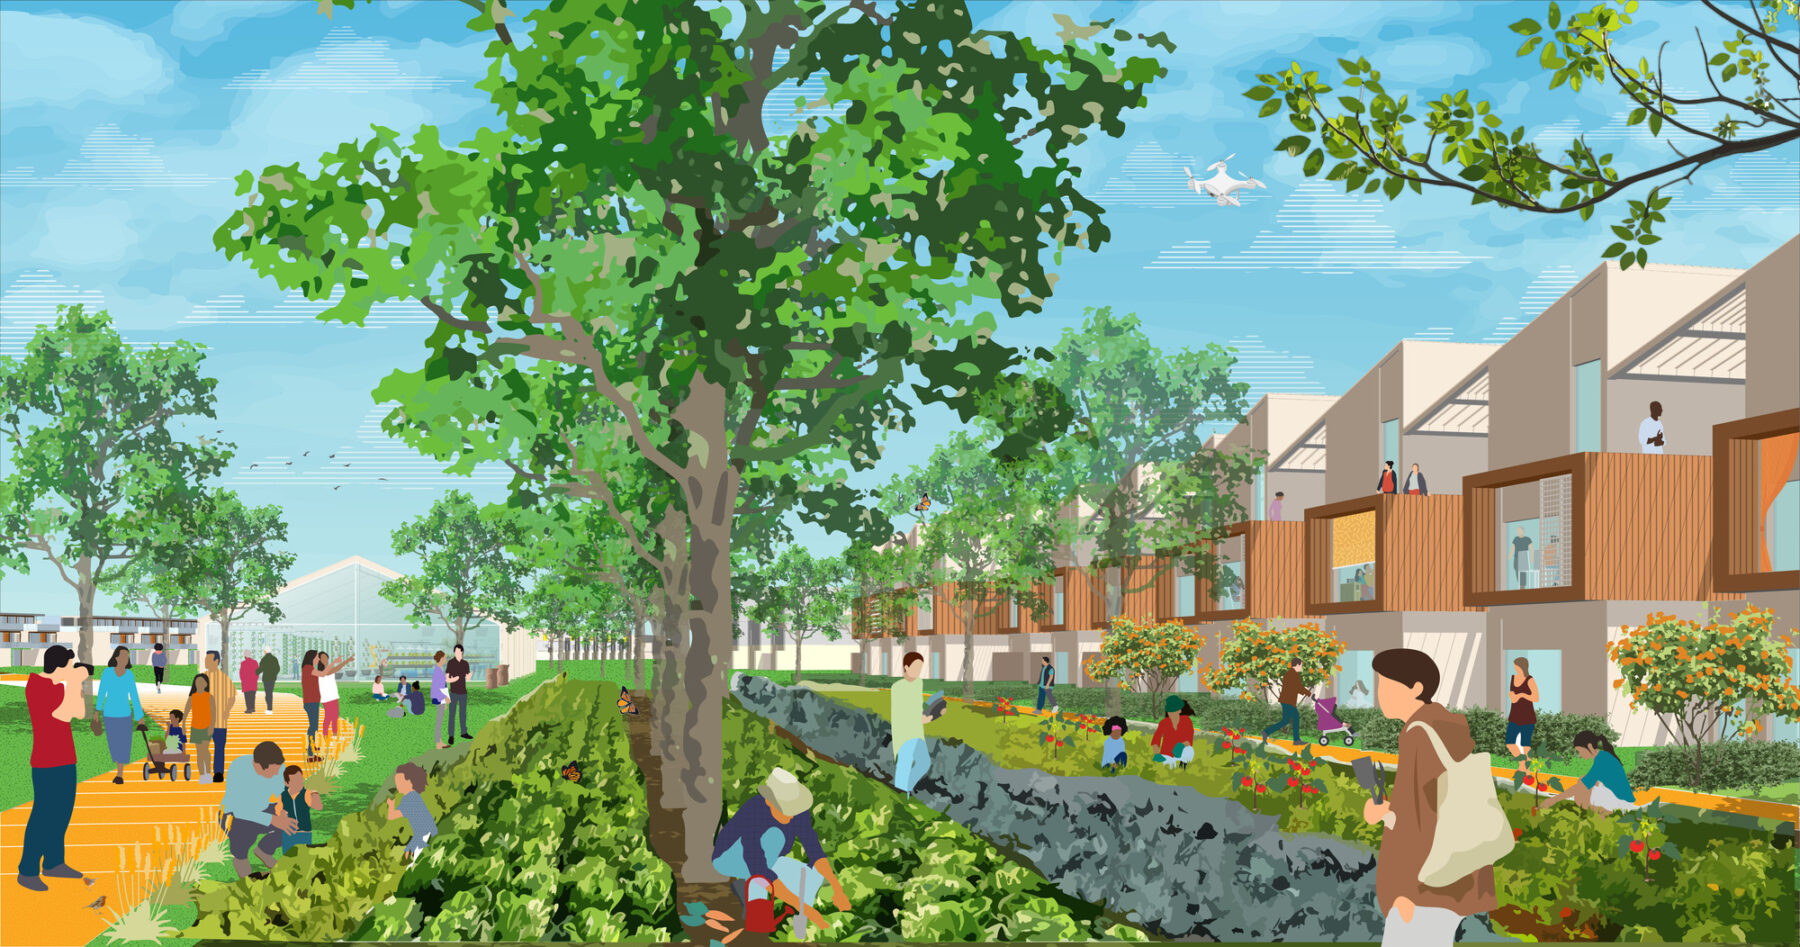 rendering of community garden amenities